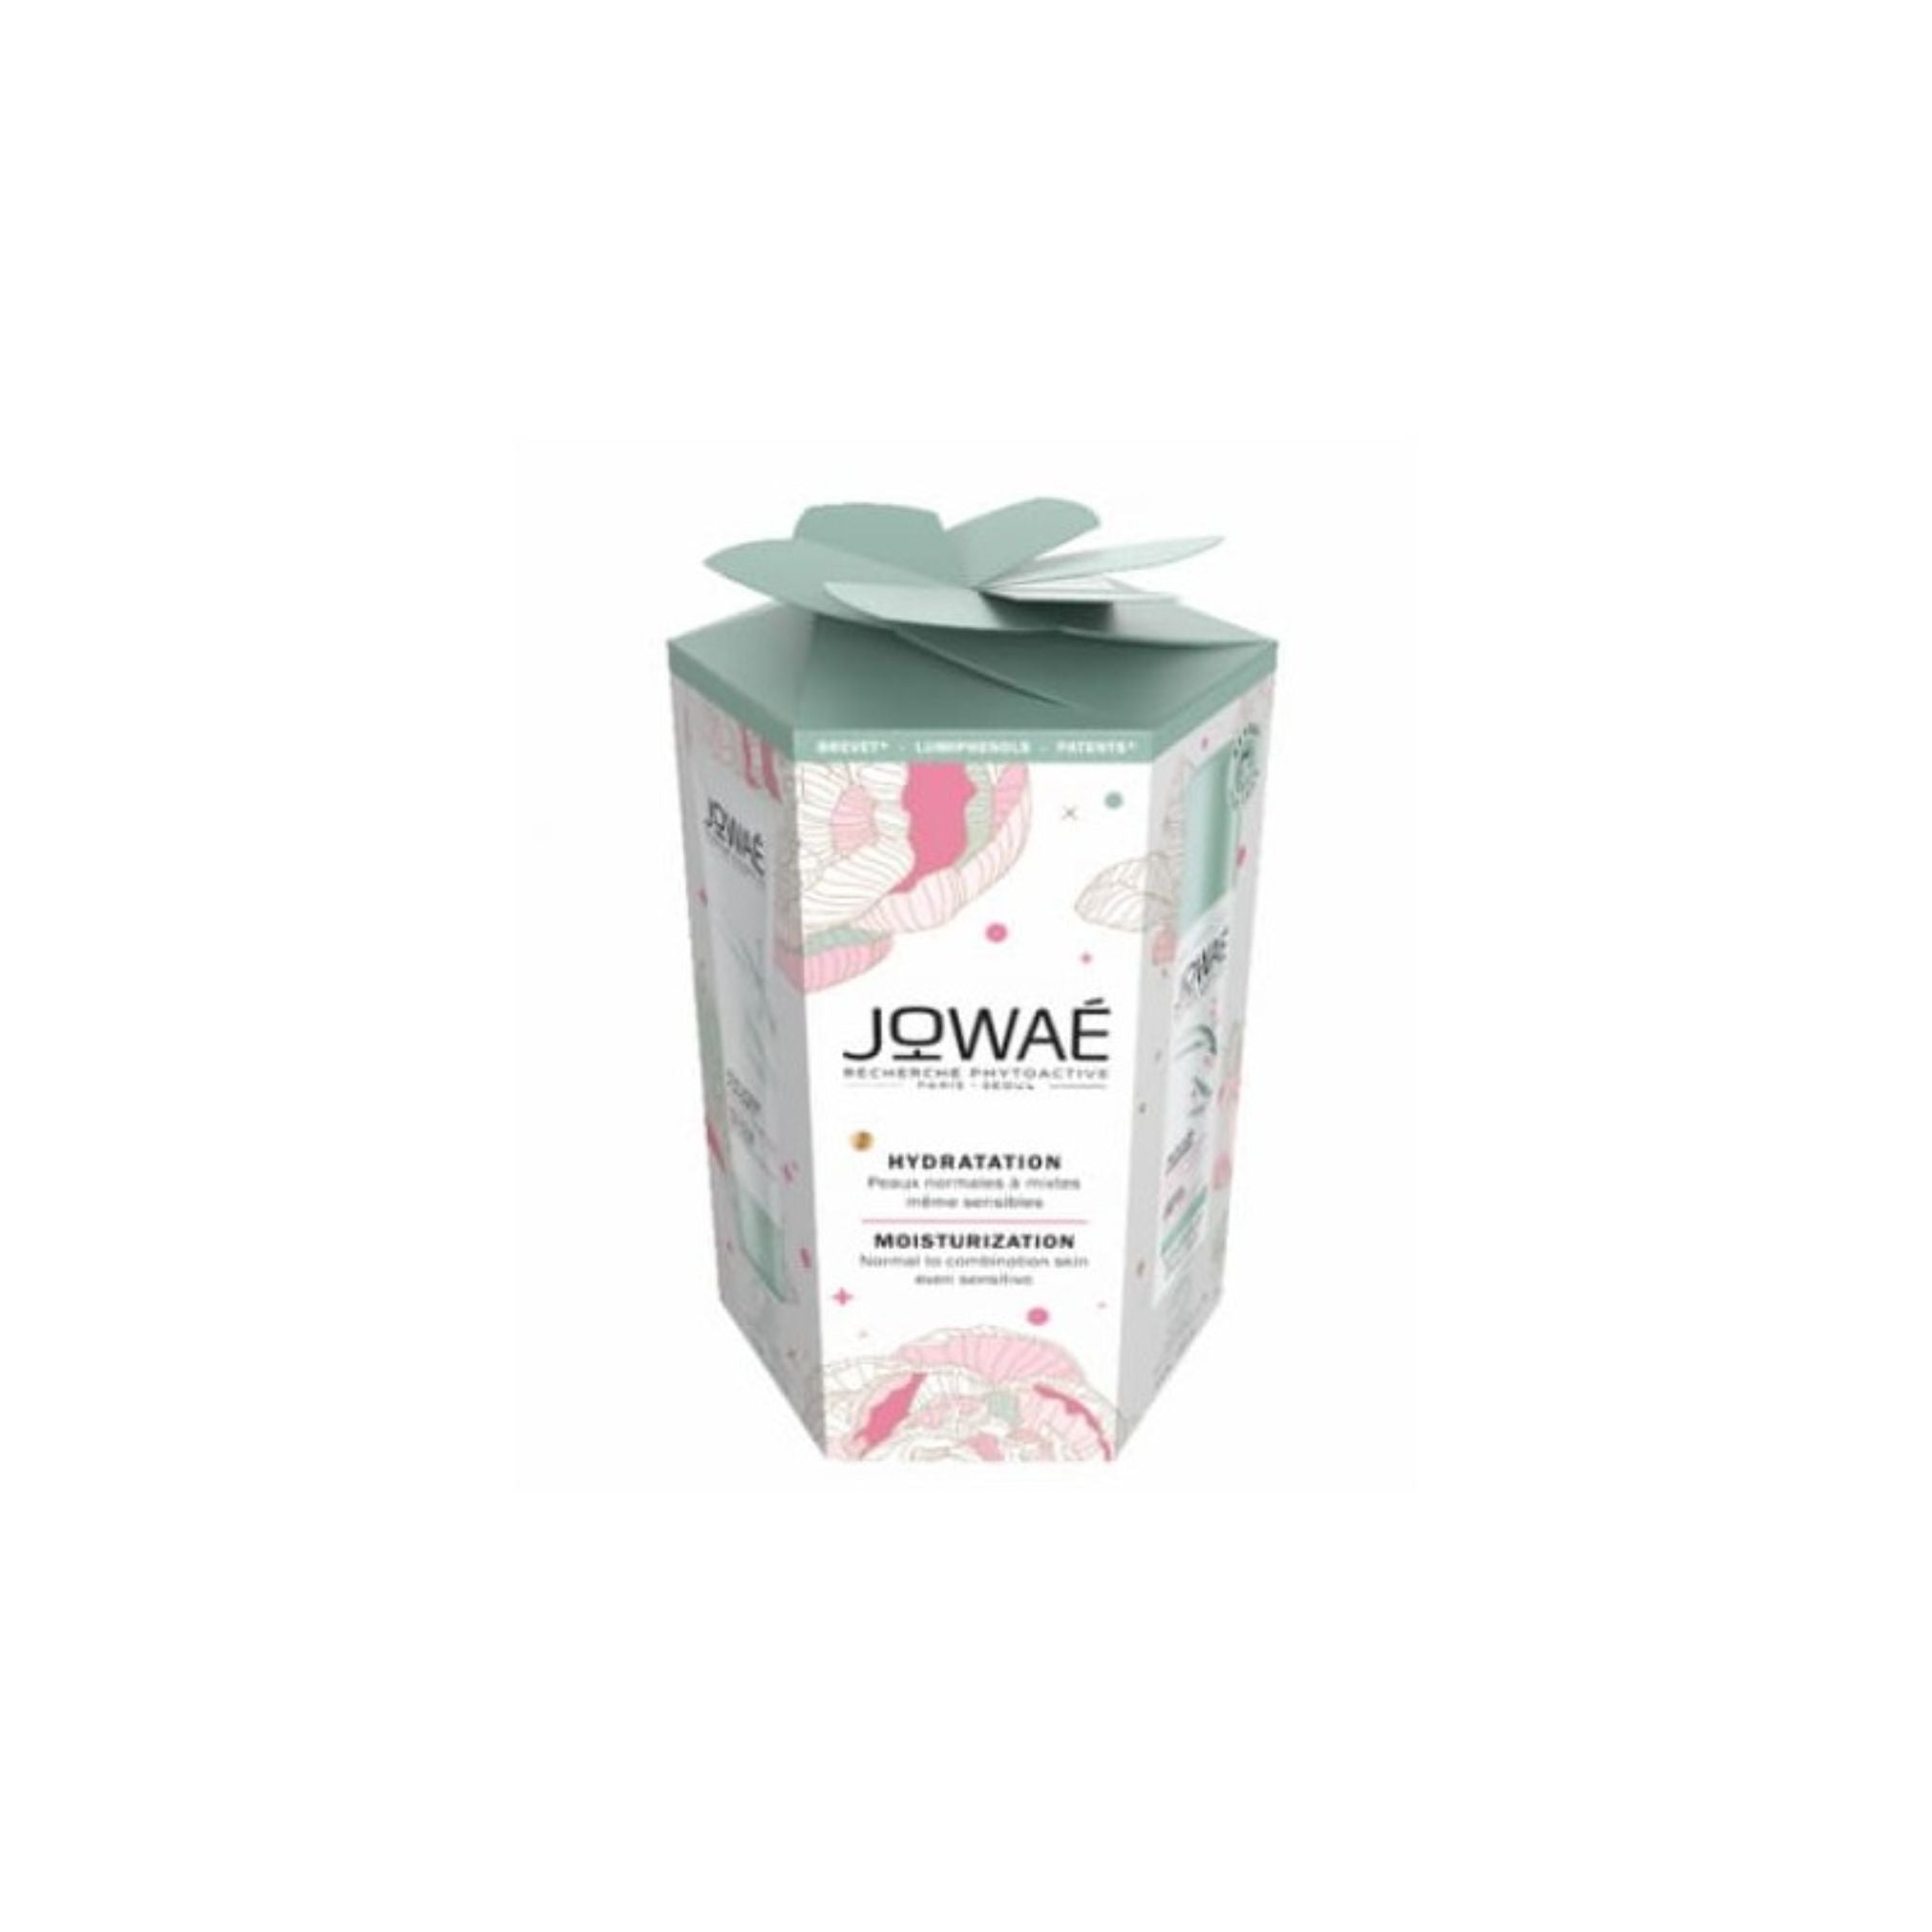 Jowaé Promo Pack: Jowaé Moisturizing Light Cream 40ml + Jowaé Hydrating Water Mist 50ml